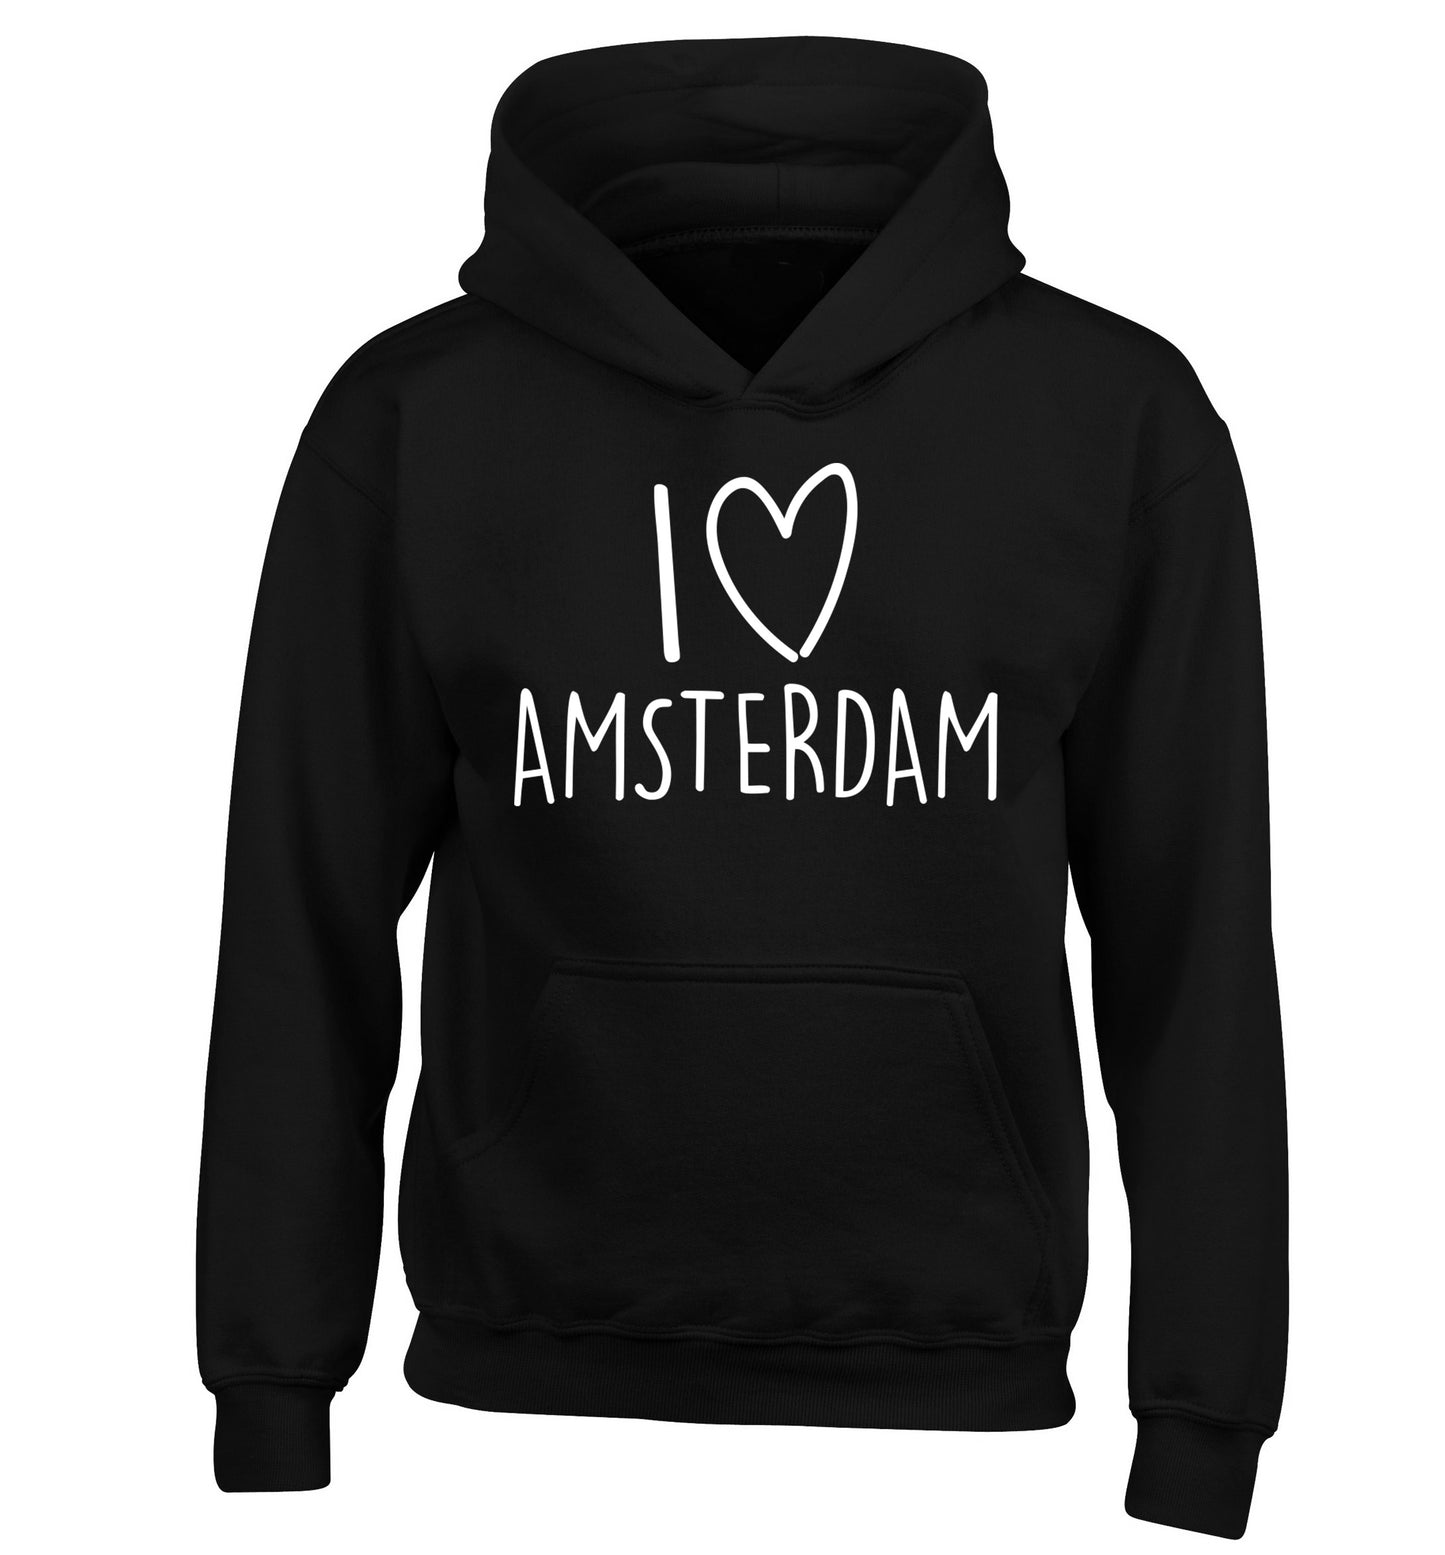 I love Amsterdam children's black hoodie 12-13 Years